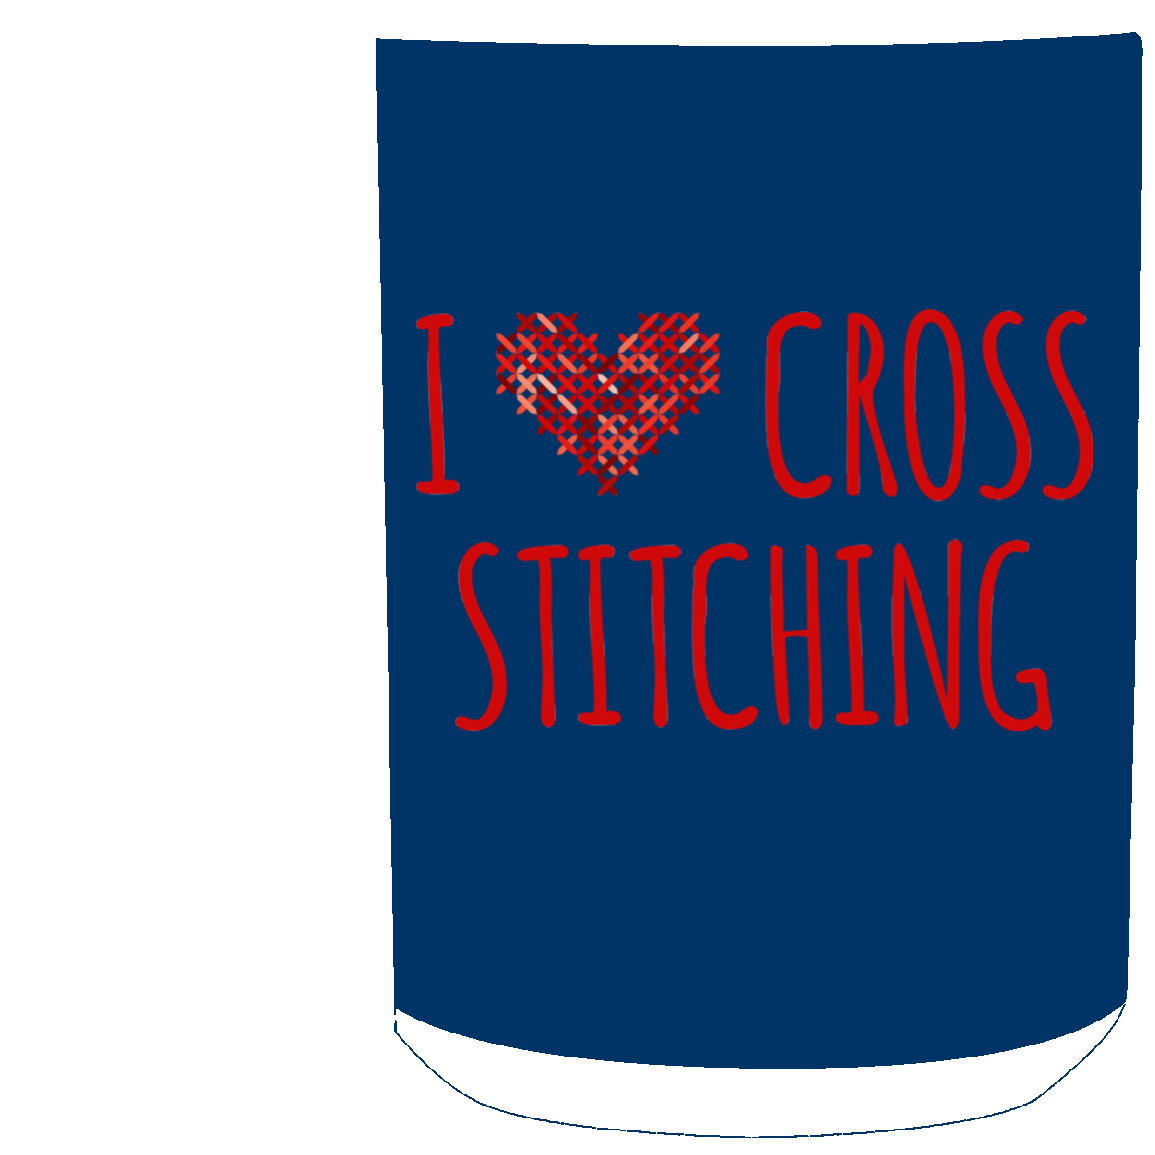 I Heart Cross Stitching White Mugs